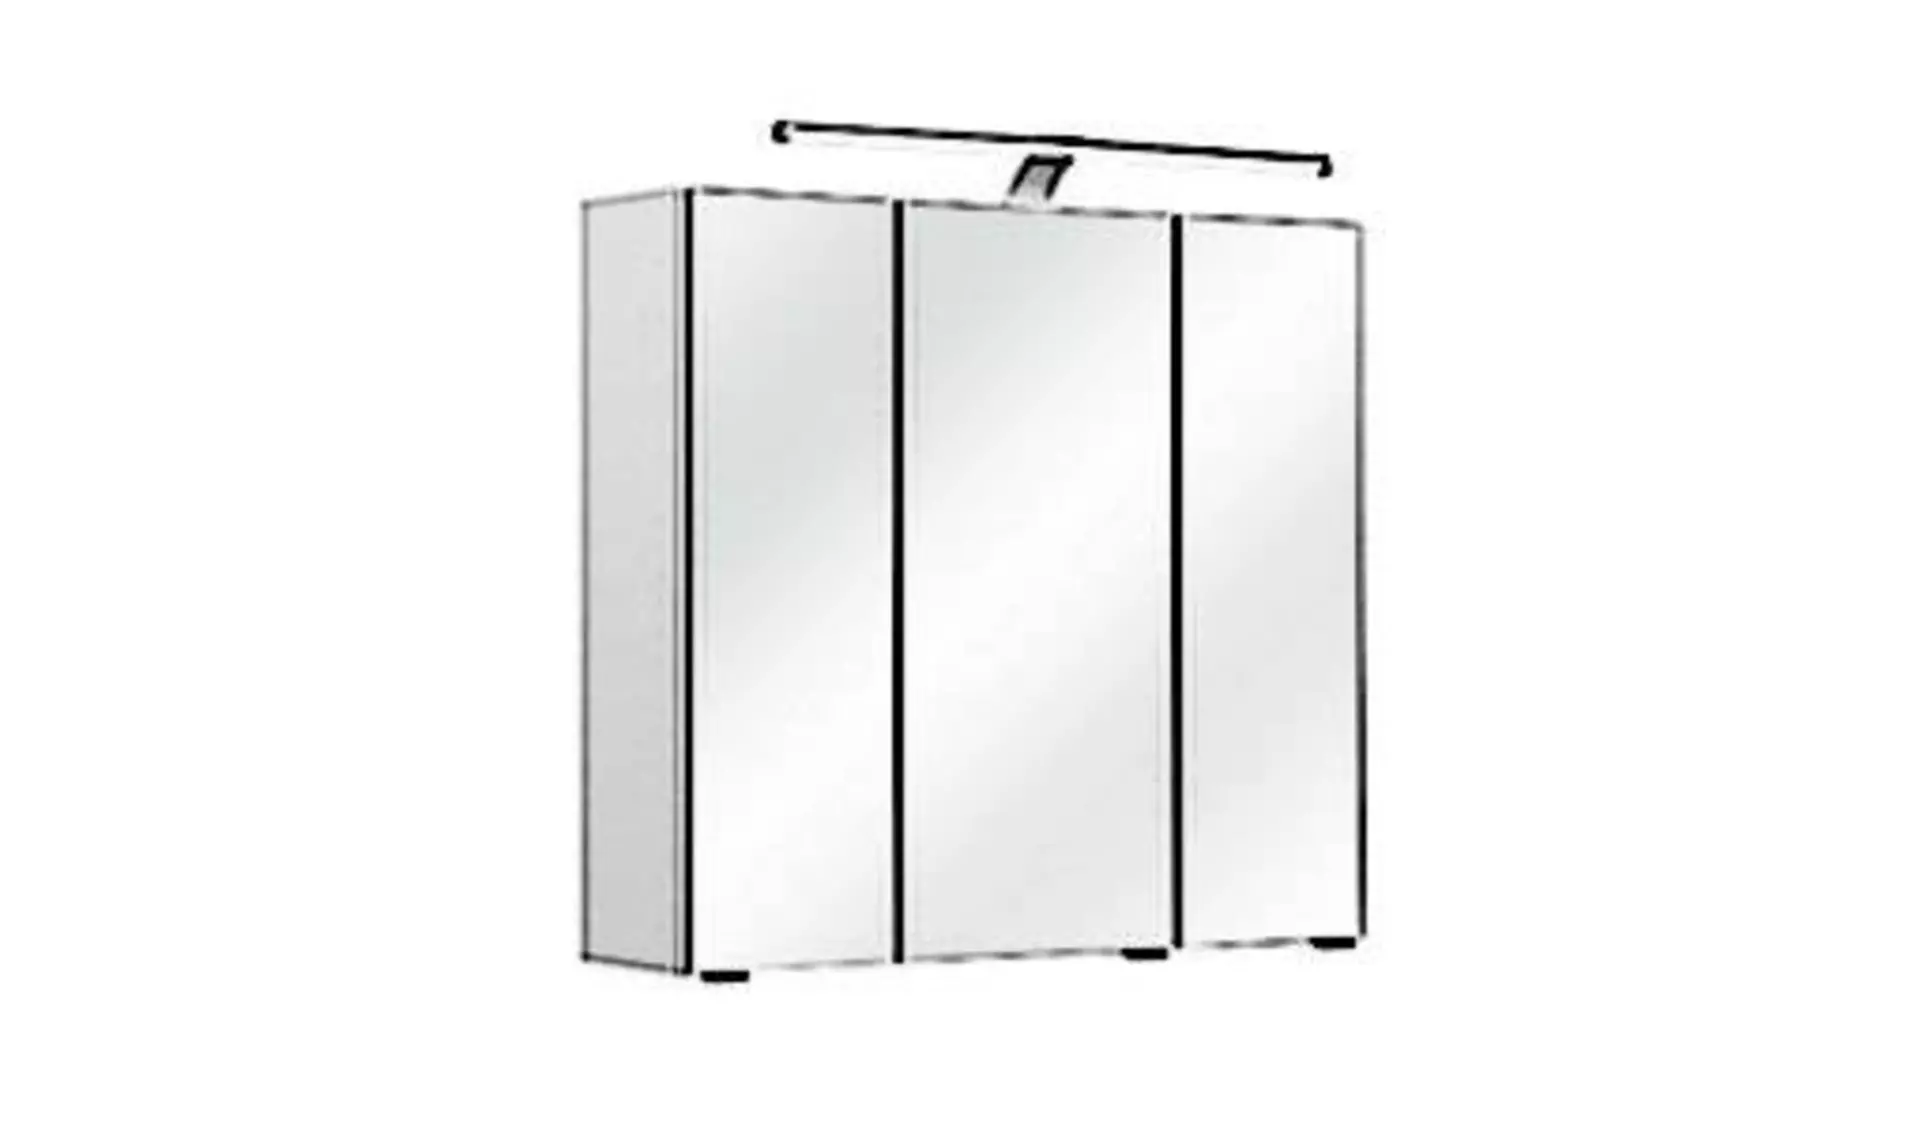 Badezimmerschrank mit drei verspiegelten Schranktüren als Icon für Spiegelschränke.